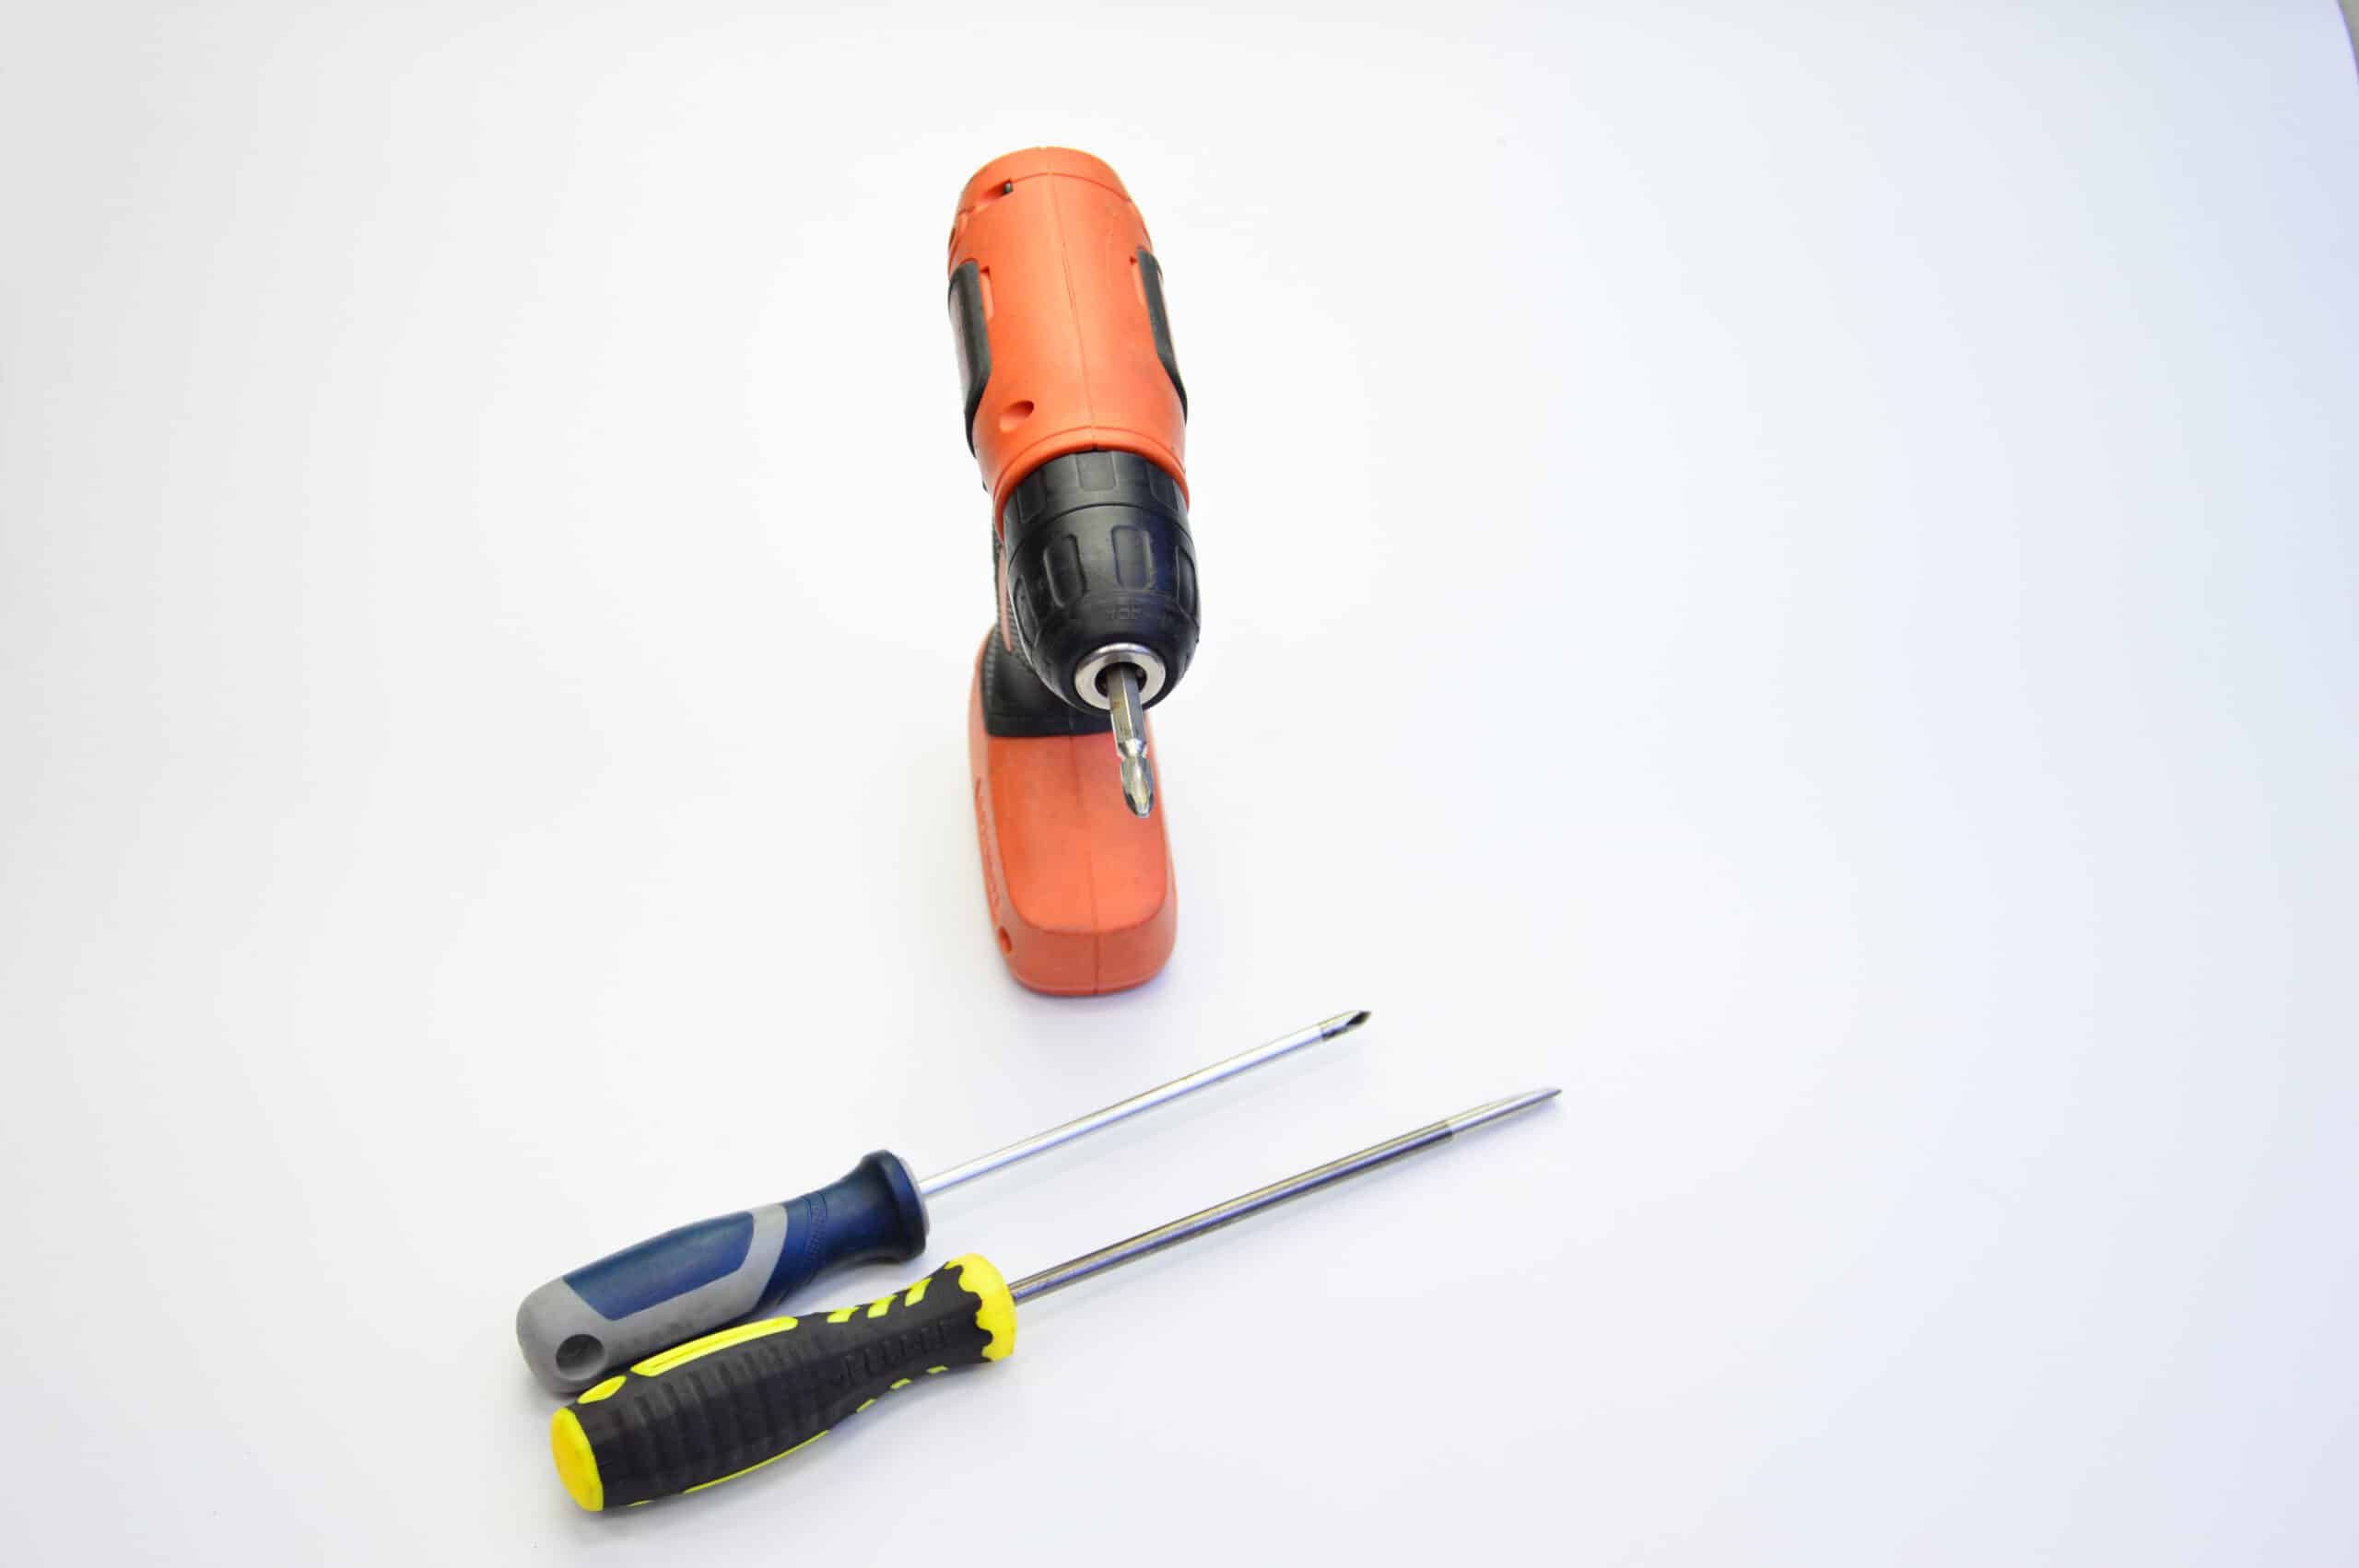 theprecisiontools.com : Do I need a cordless screwdriver if I have a drill?